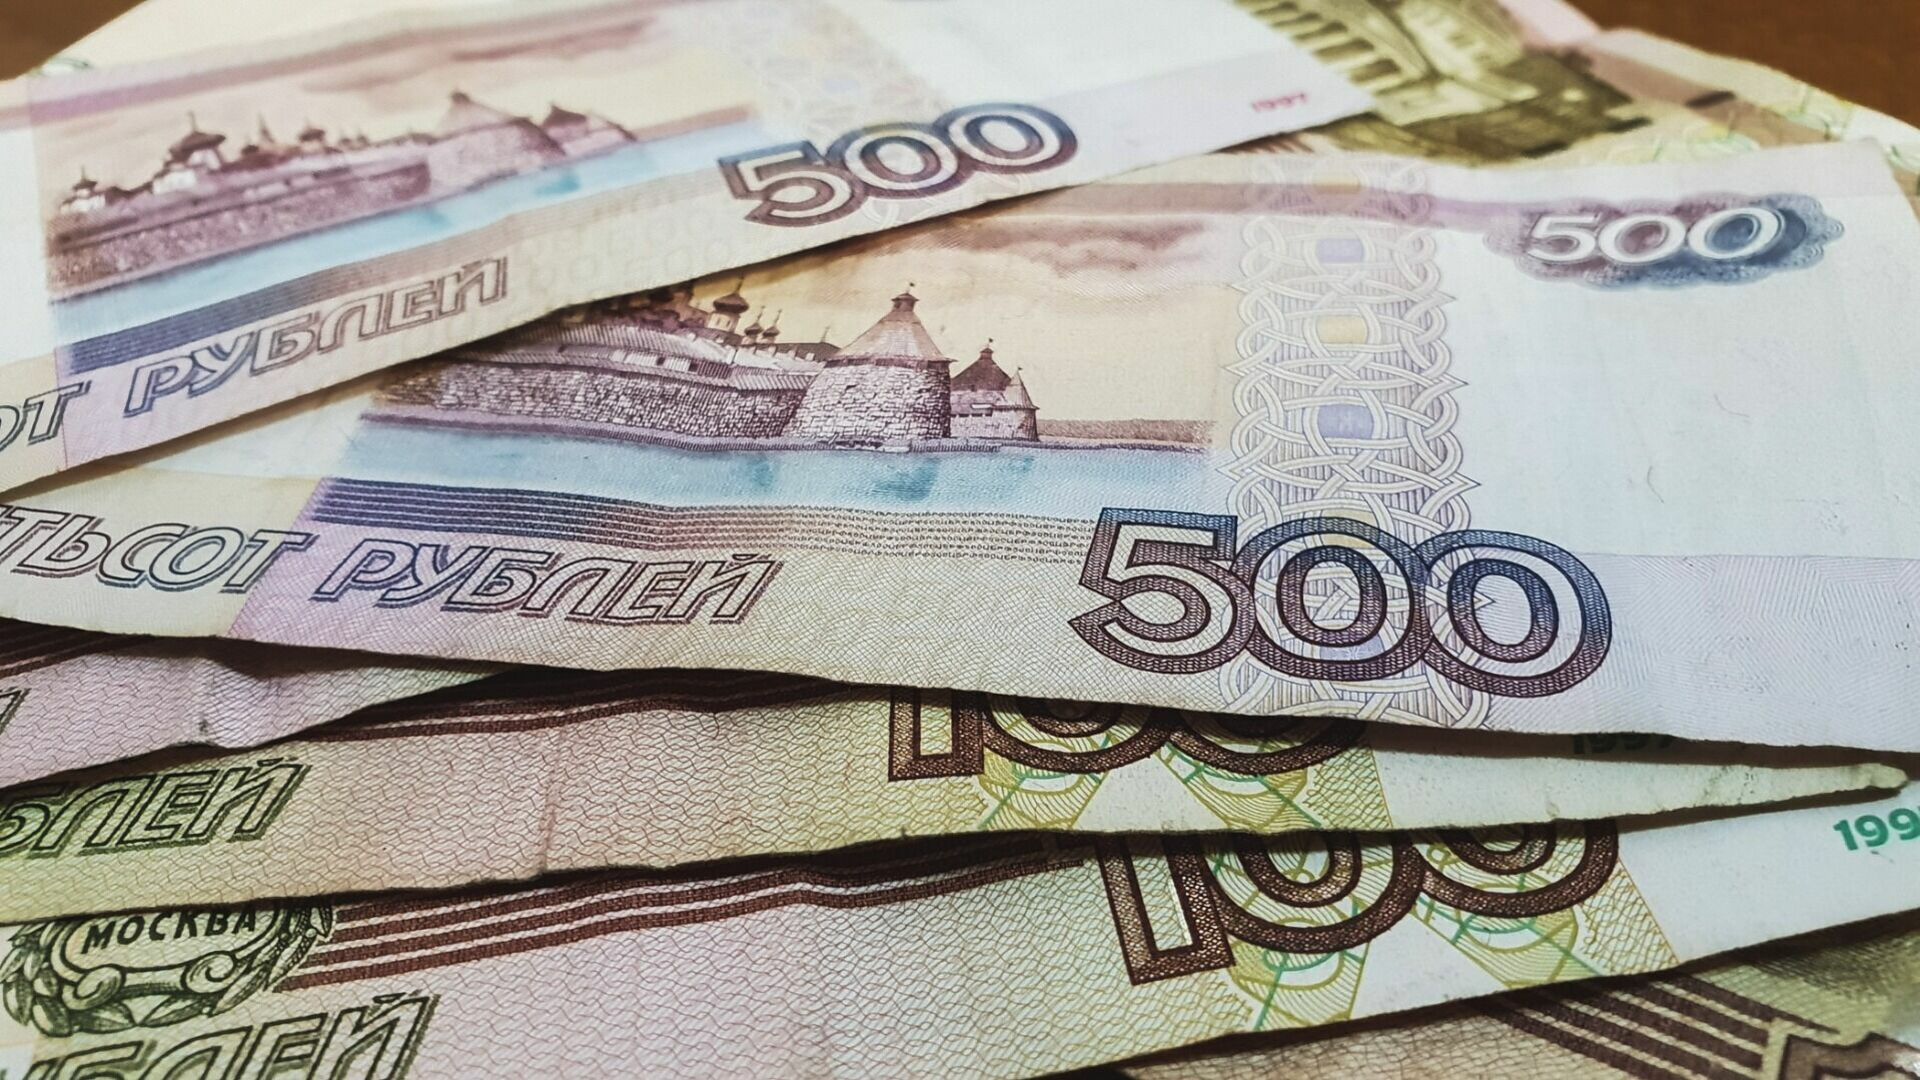 Ради получения выплат из финансовой пирамиды оренбурженка отдала мошенникам 799 тысяч